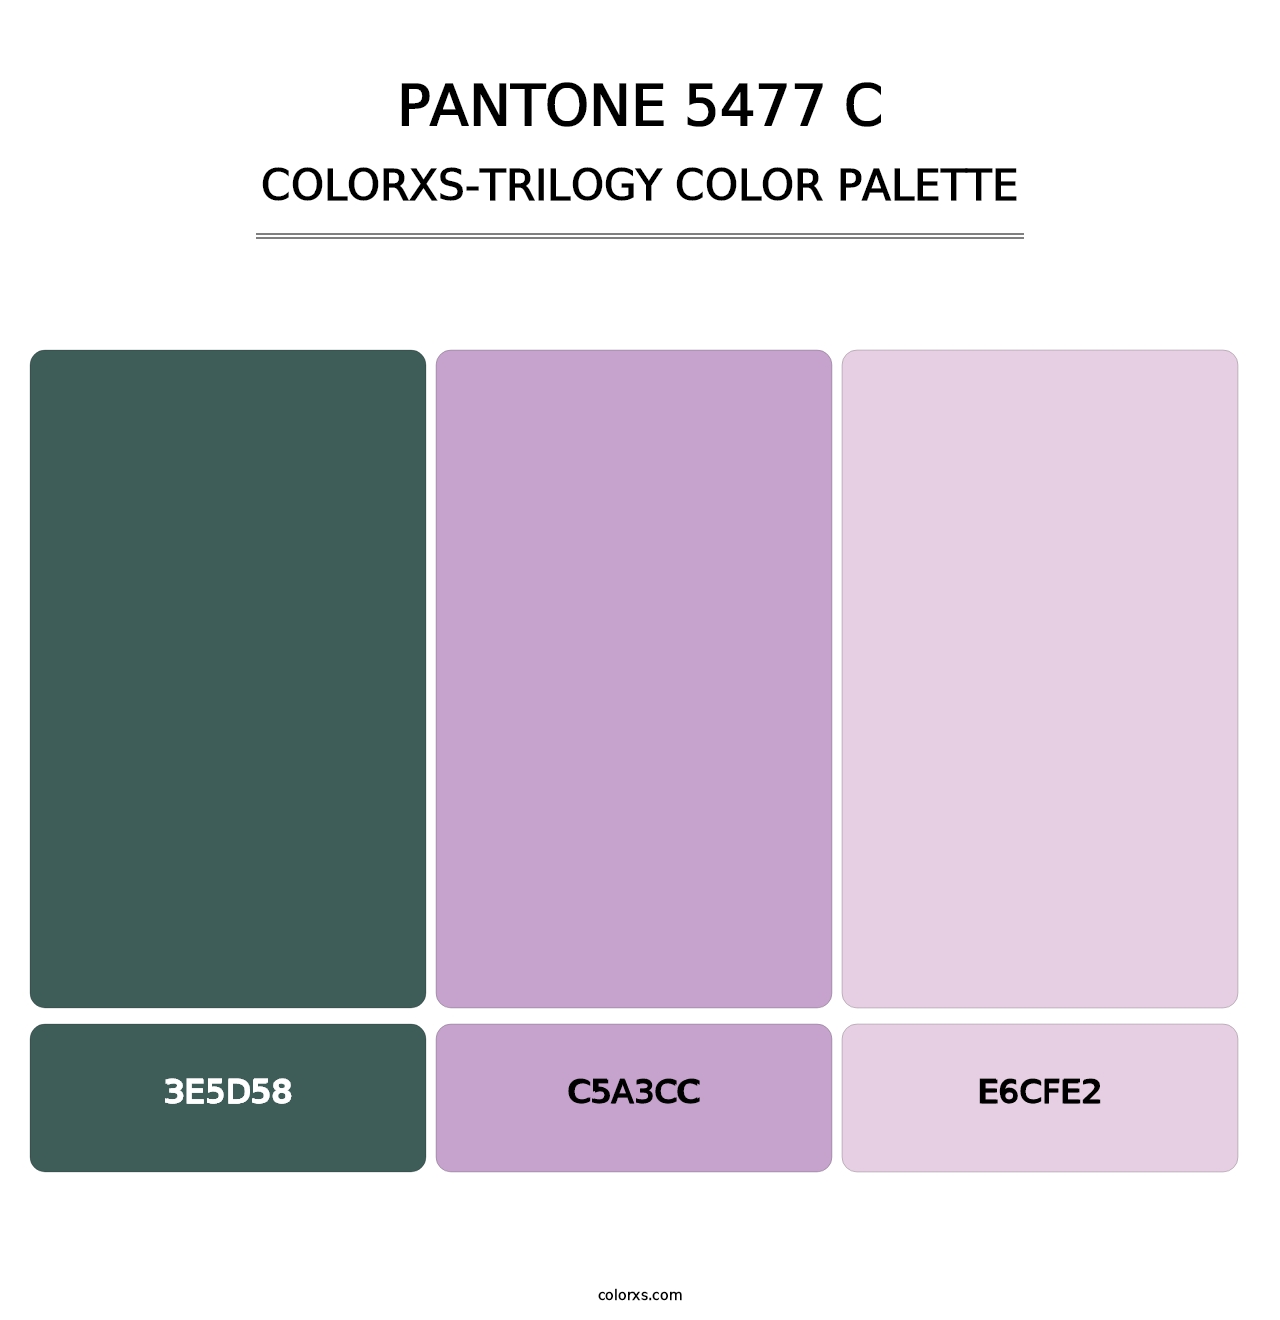 PANTONE 5477 C - Colorxs Trilogy Palette